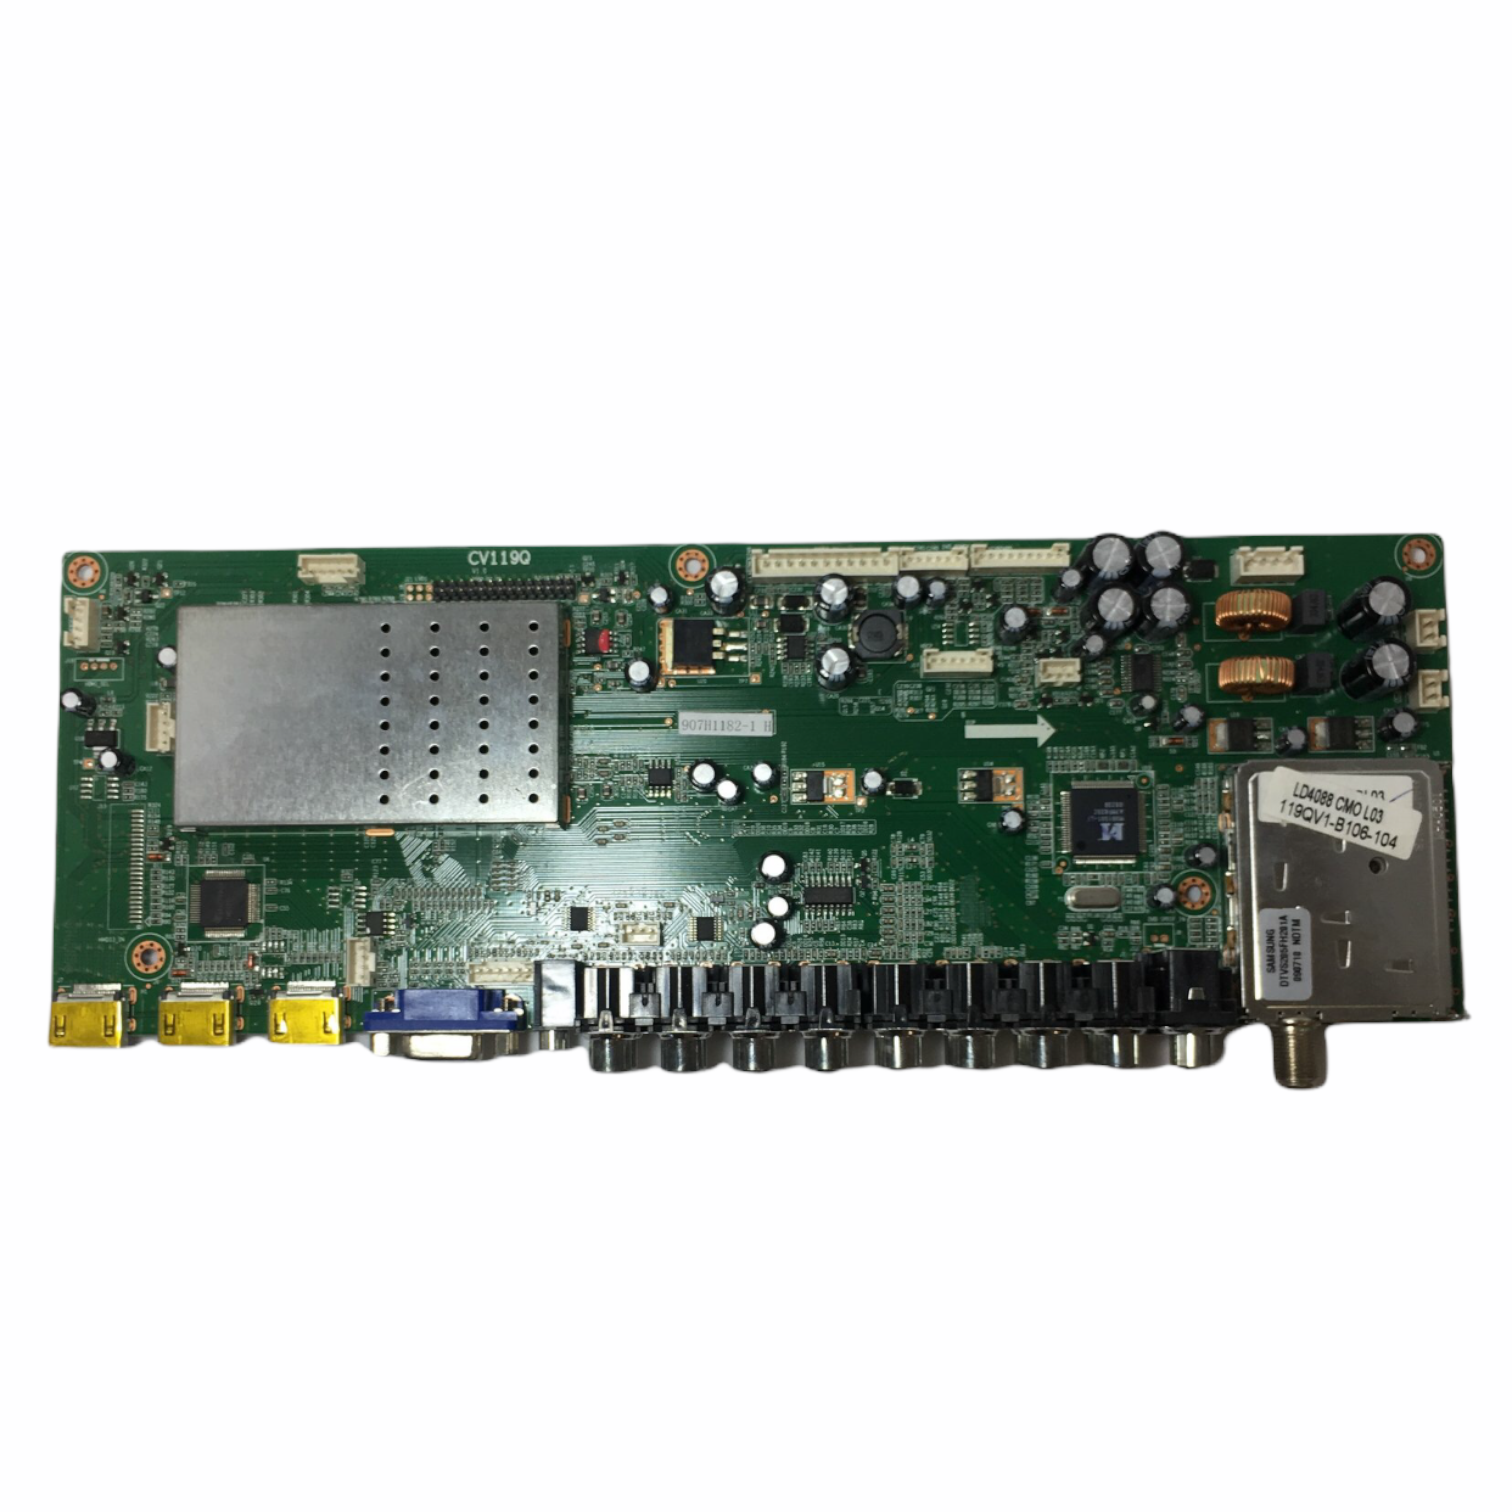 Apex 907H1182-1 (1.308.00102, CV119Q) Main Board for LD4088